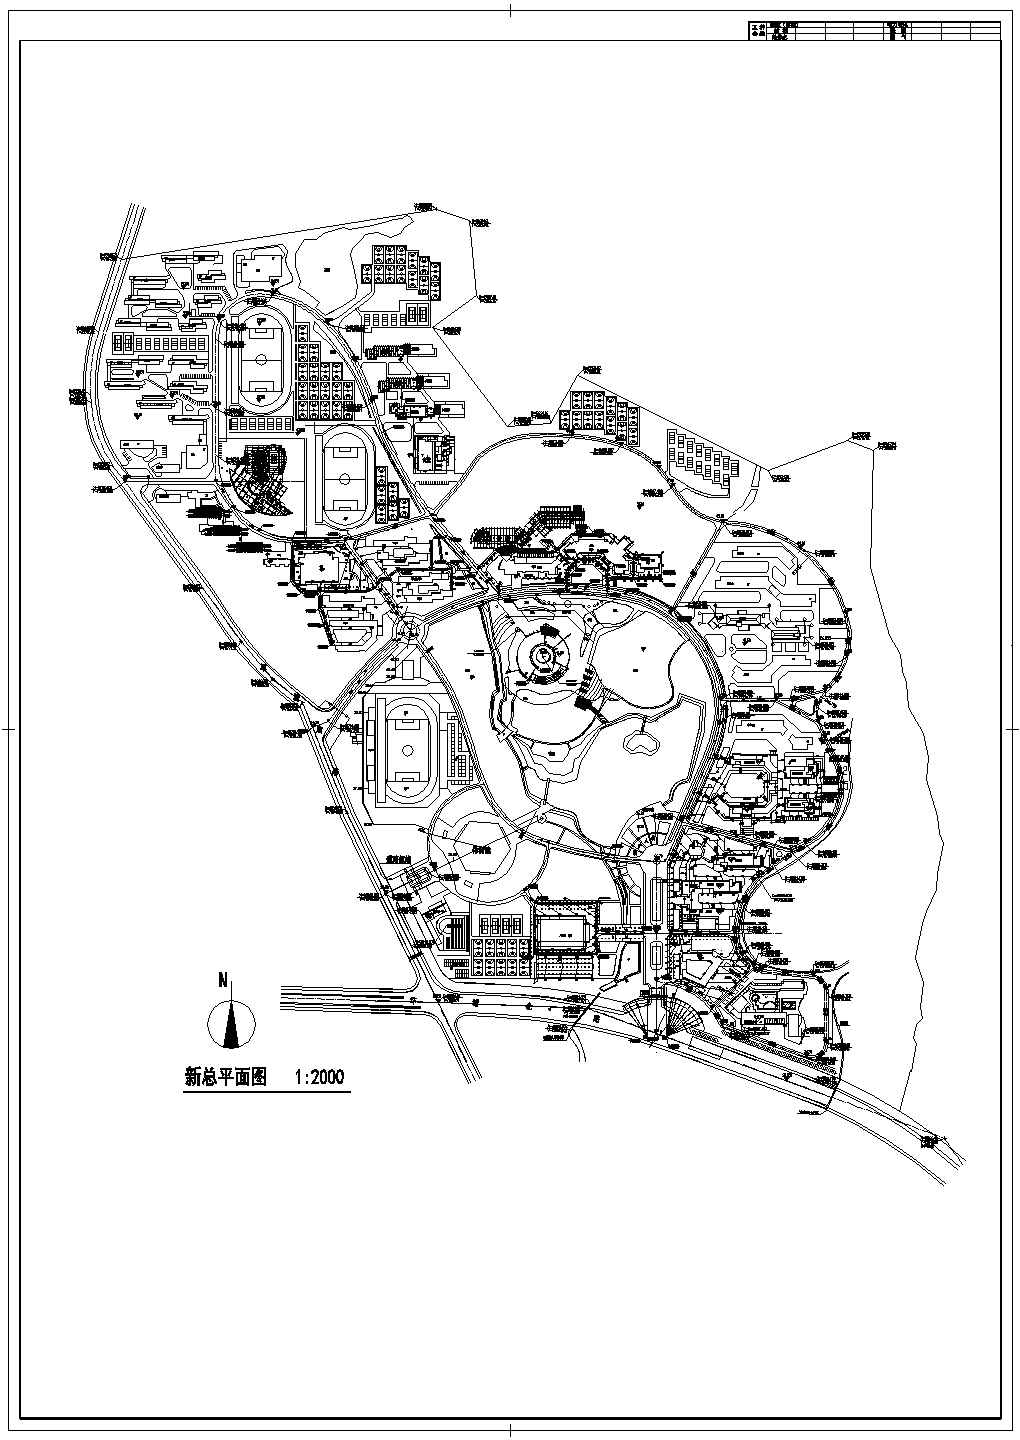 某学院新校区规划总平面图1:2000